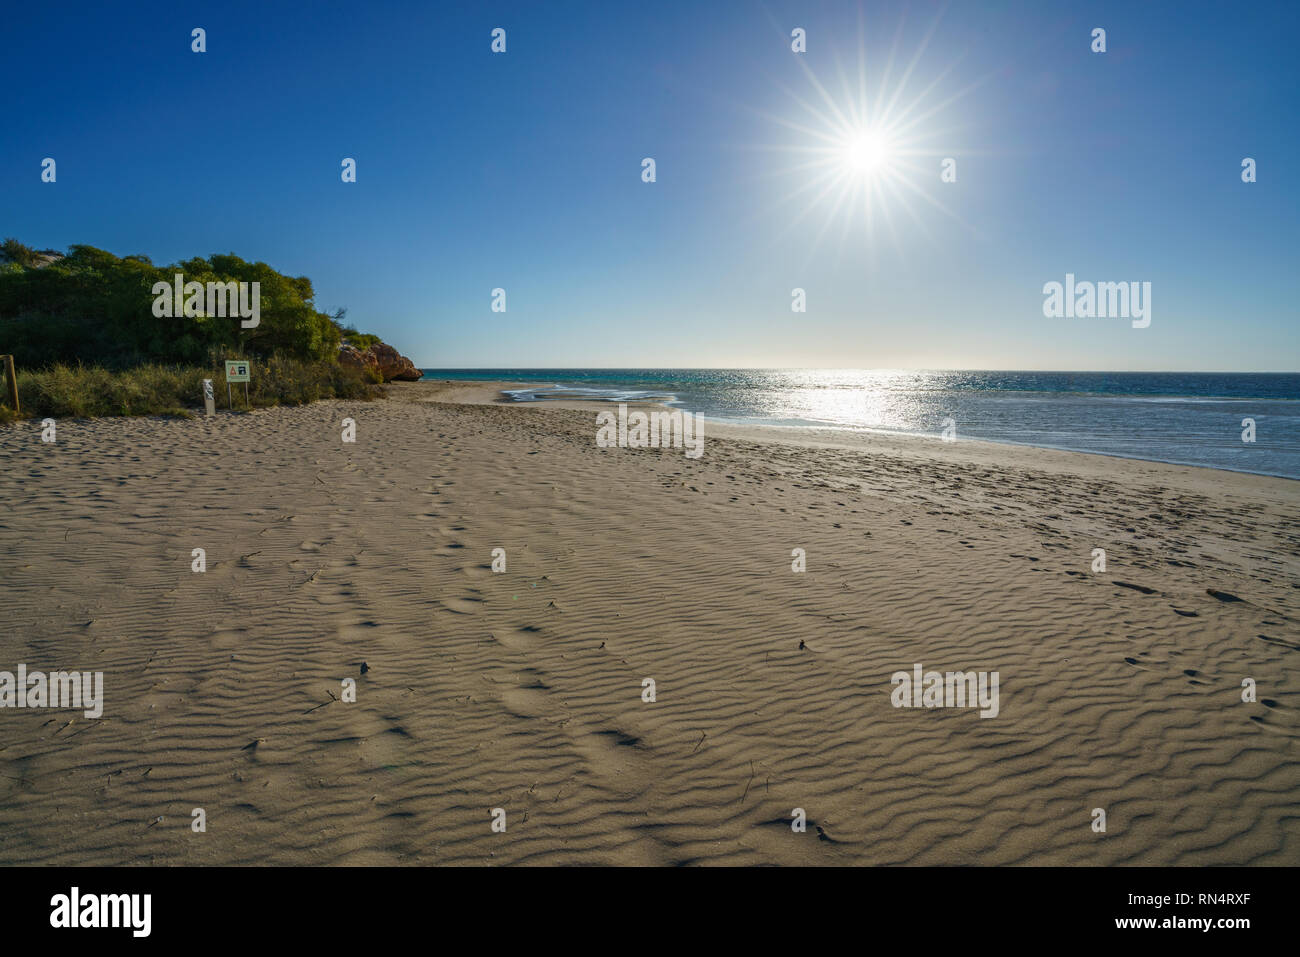 Le dune di sabbia del tramonto, bollette Bay Coral Bay Coral Coast, Australia occidentale Foto Stock